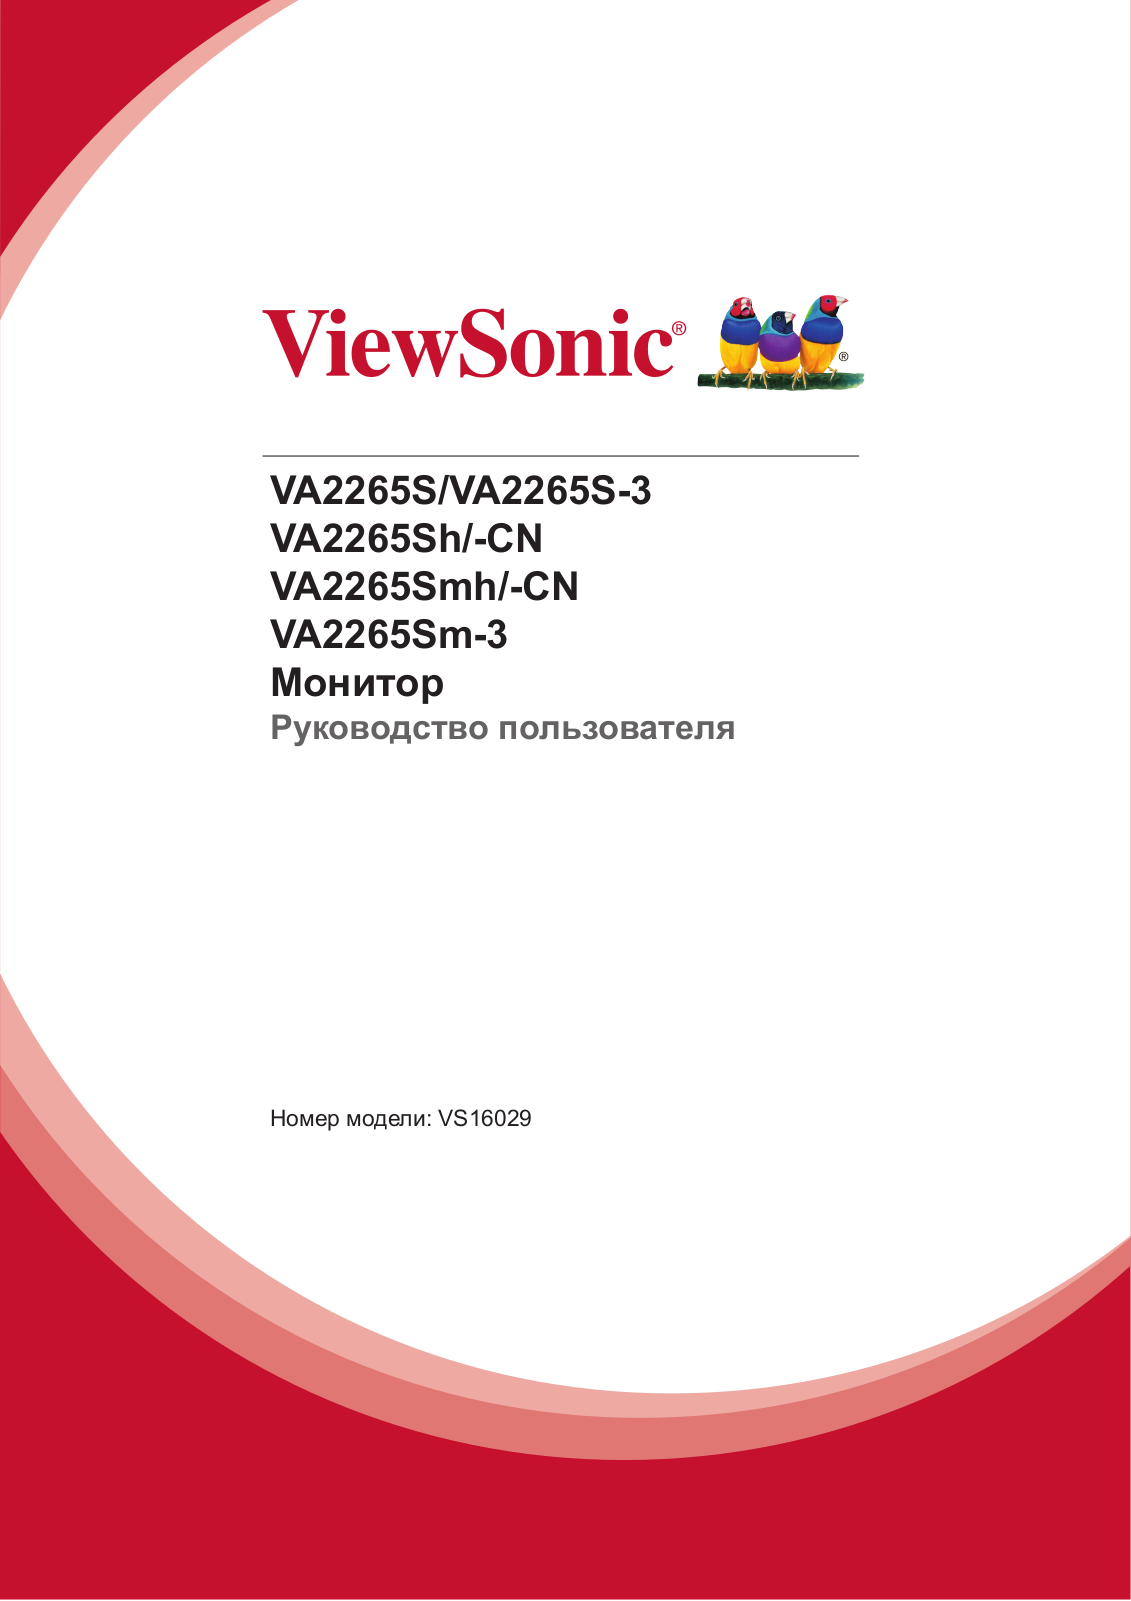 Viewsonic VA2265S, VA2265Sh-CN, VA2265Smh-CN, VA2265Sm-3 User Manual